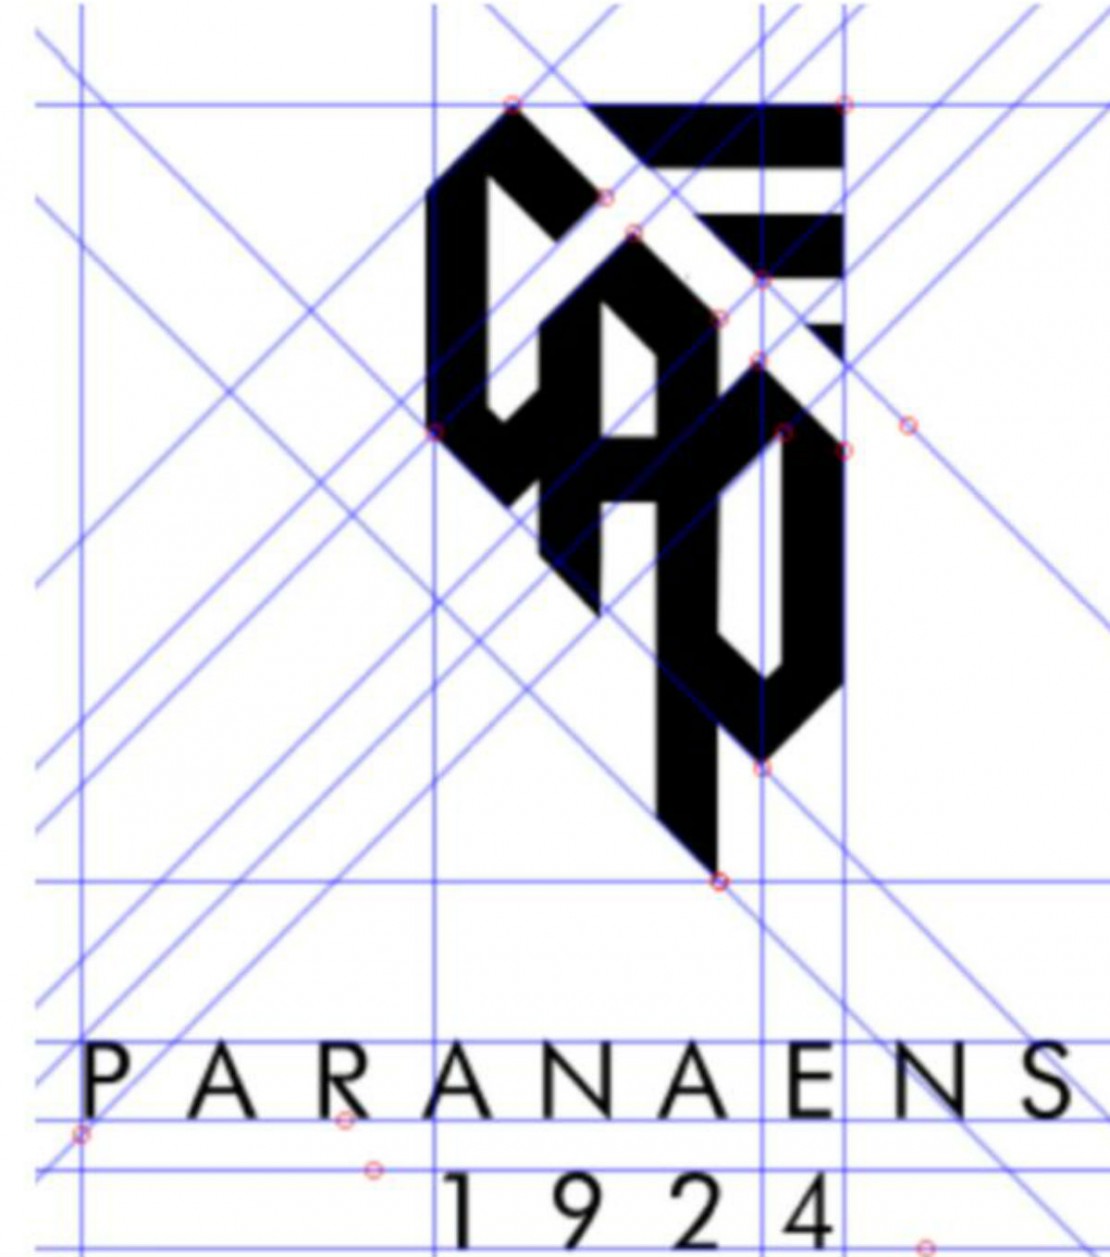 Tribuna teve acesso ao esboço do possível logotipo do Furacão. A imagem está cortada e falta o E do “Paranaense”. Foto: Reprodução